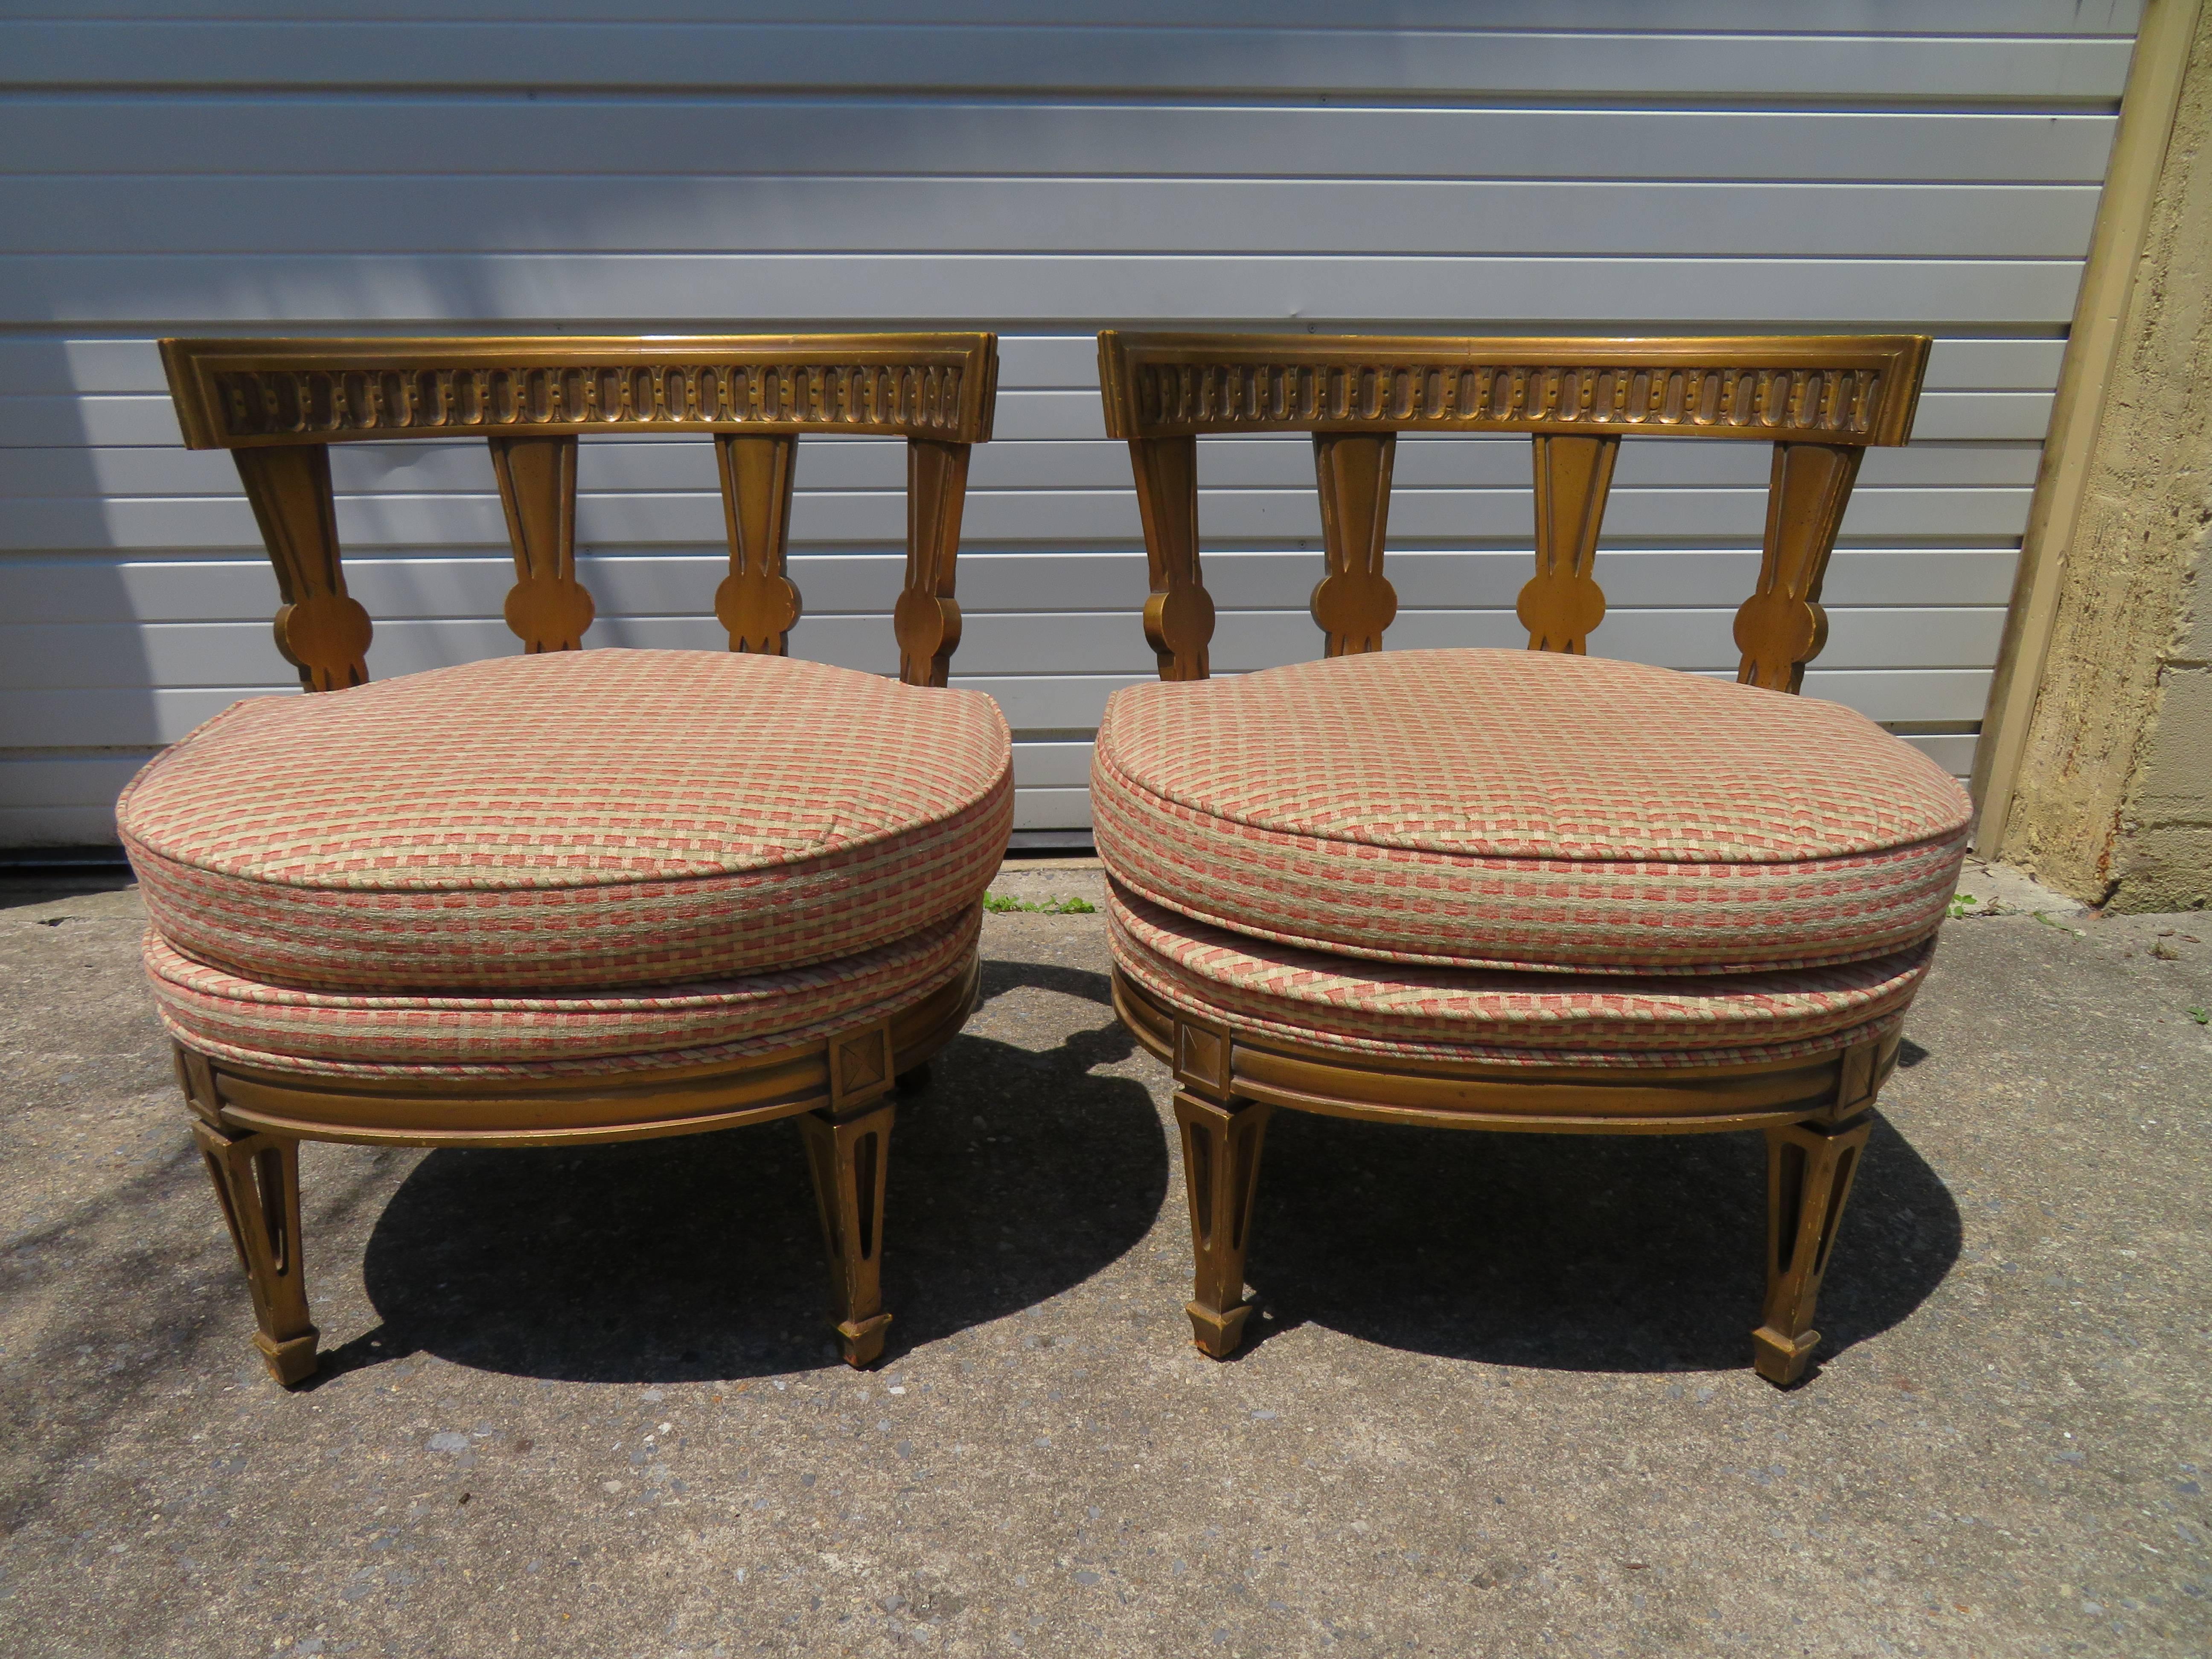 Atemberaubendes Paar Hollywood Regency-Stühle im Maison Jansen-Stil mit Pantoffeln. Die Stühle haben gut geschnitzte Rahmen mit klassischen Details an den Rückenlehnen und Beinen. Die goldfarbene Oberfläche verleiht ihm einen ganz besonderen Charme.